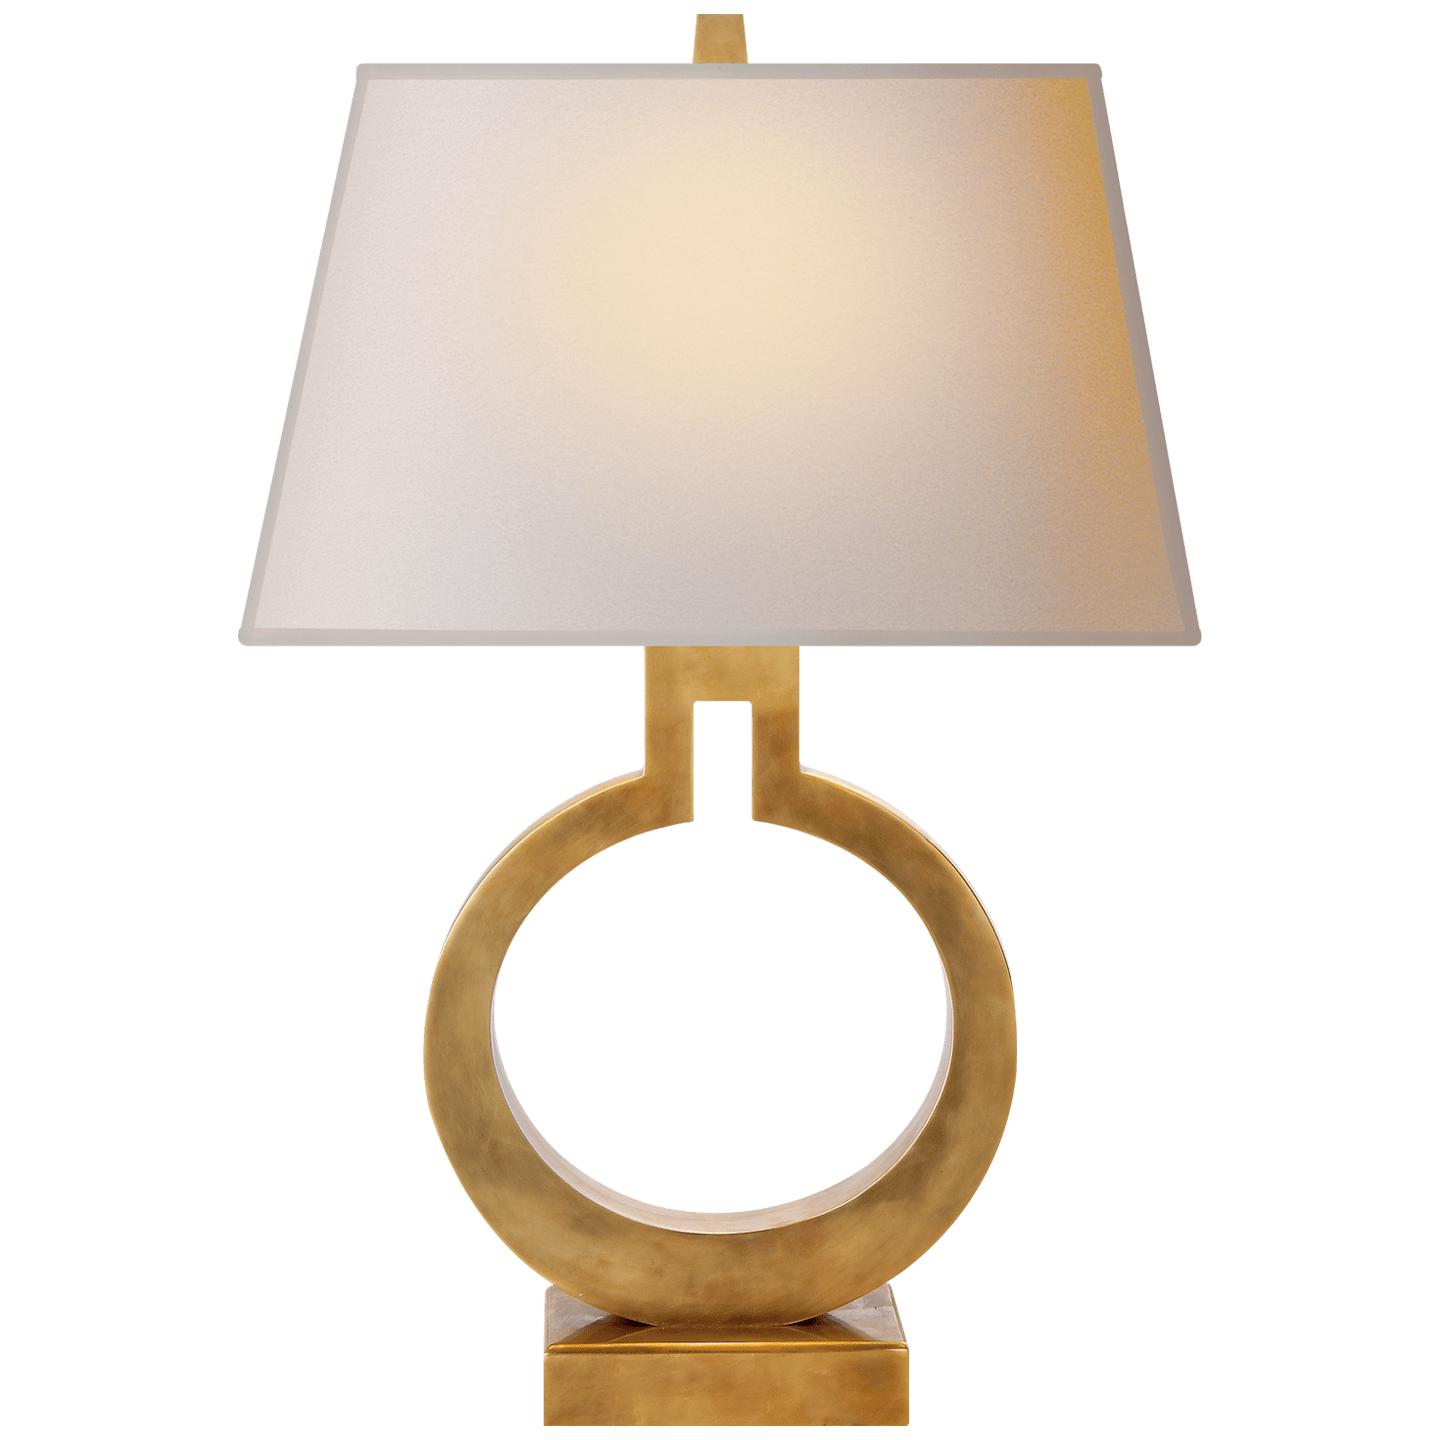 Купить Настольная лампа Ring Form Small Table Lamp в интернет-магазине roooms.ru